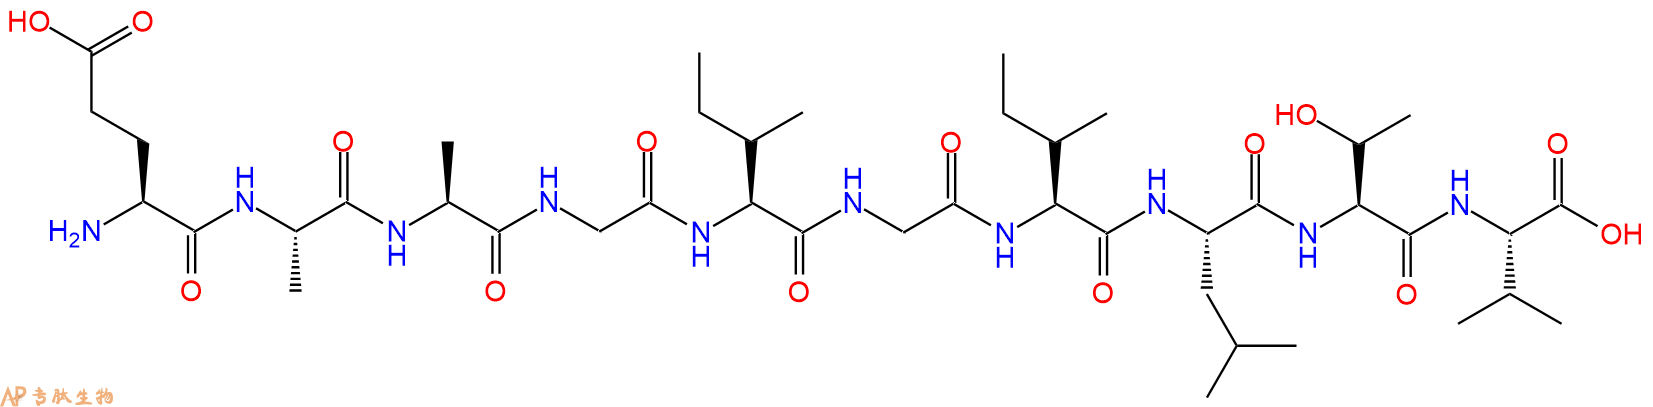 专肽生物产品MART-1(26-35))(human)156251-01-3